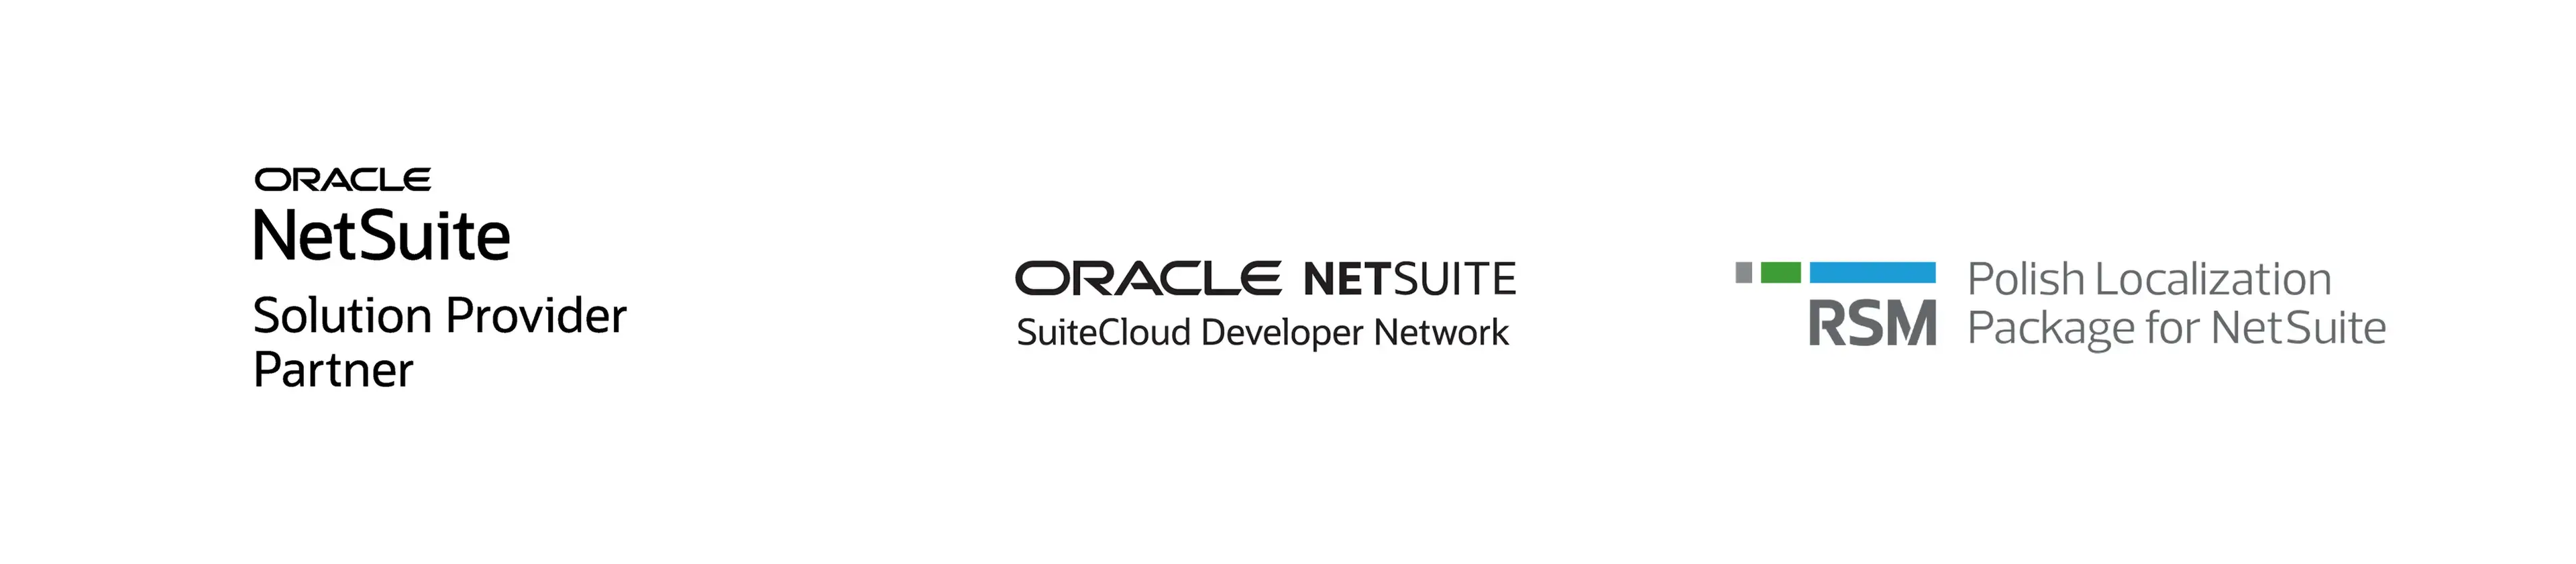 NetSuite logos